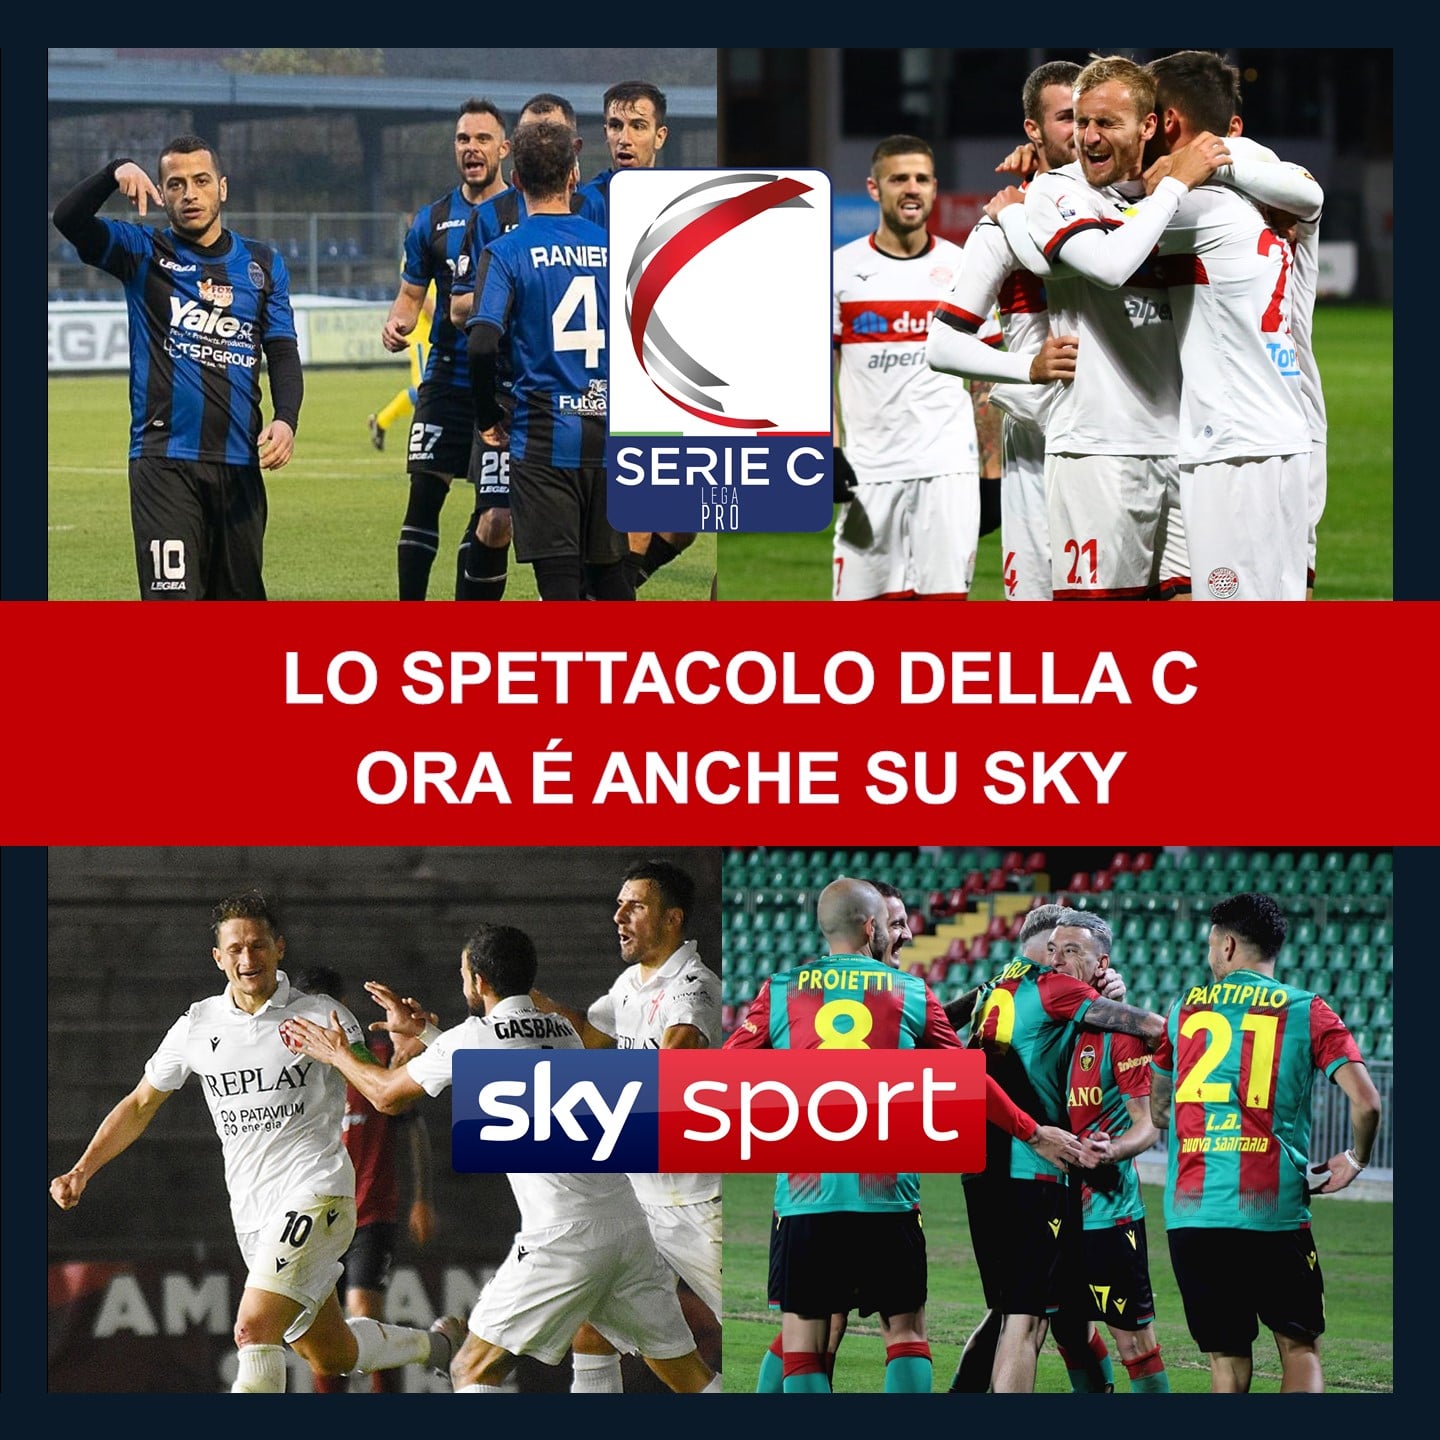 Serie C 2020/2021 in diretta pay per view su Sky, fino a 15 incontri a giornata